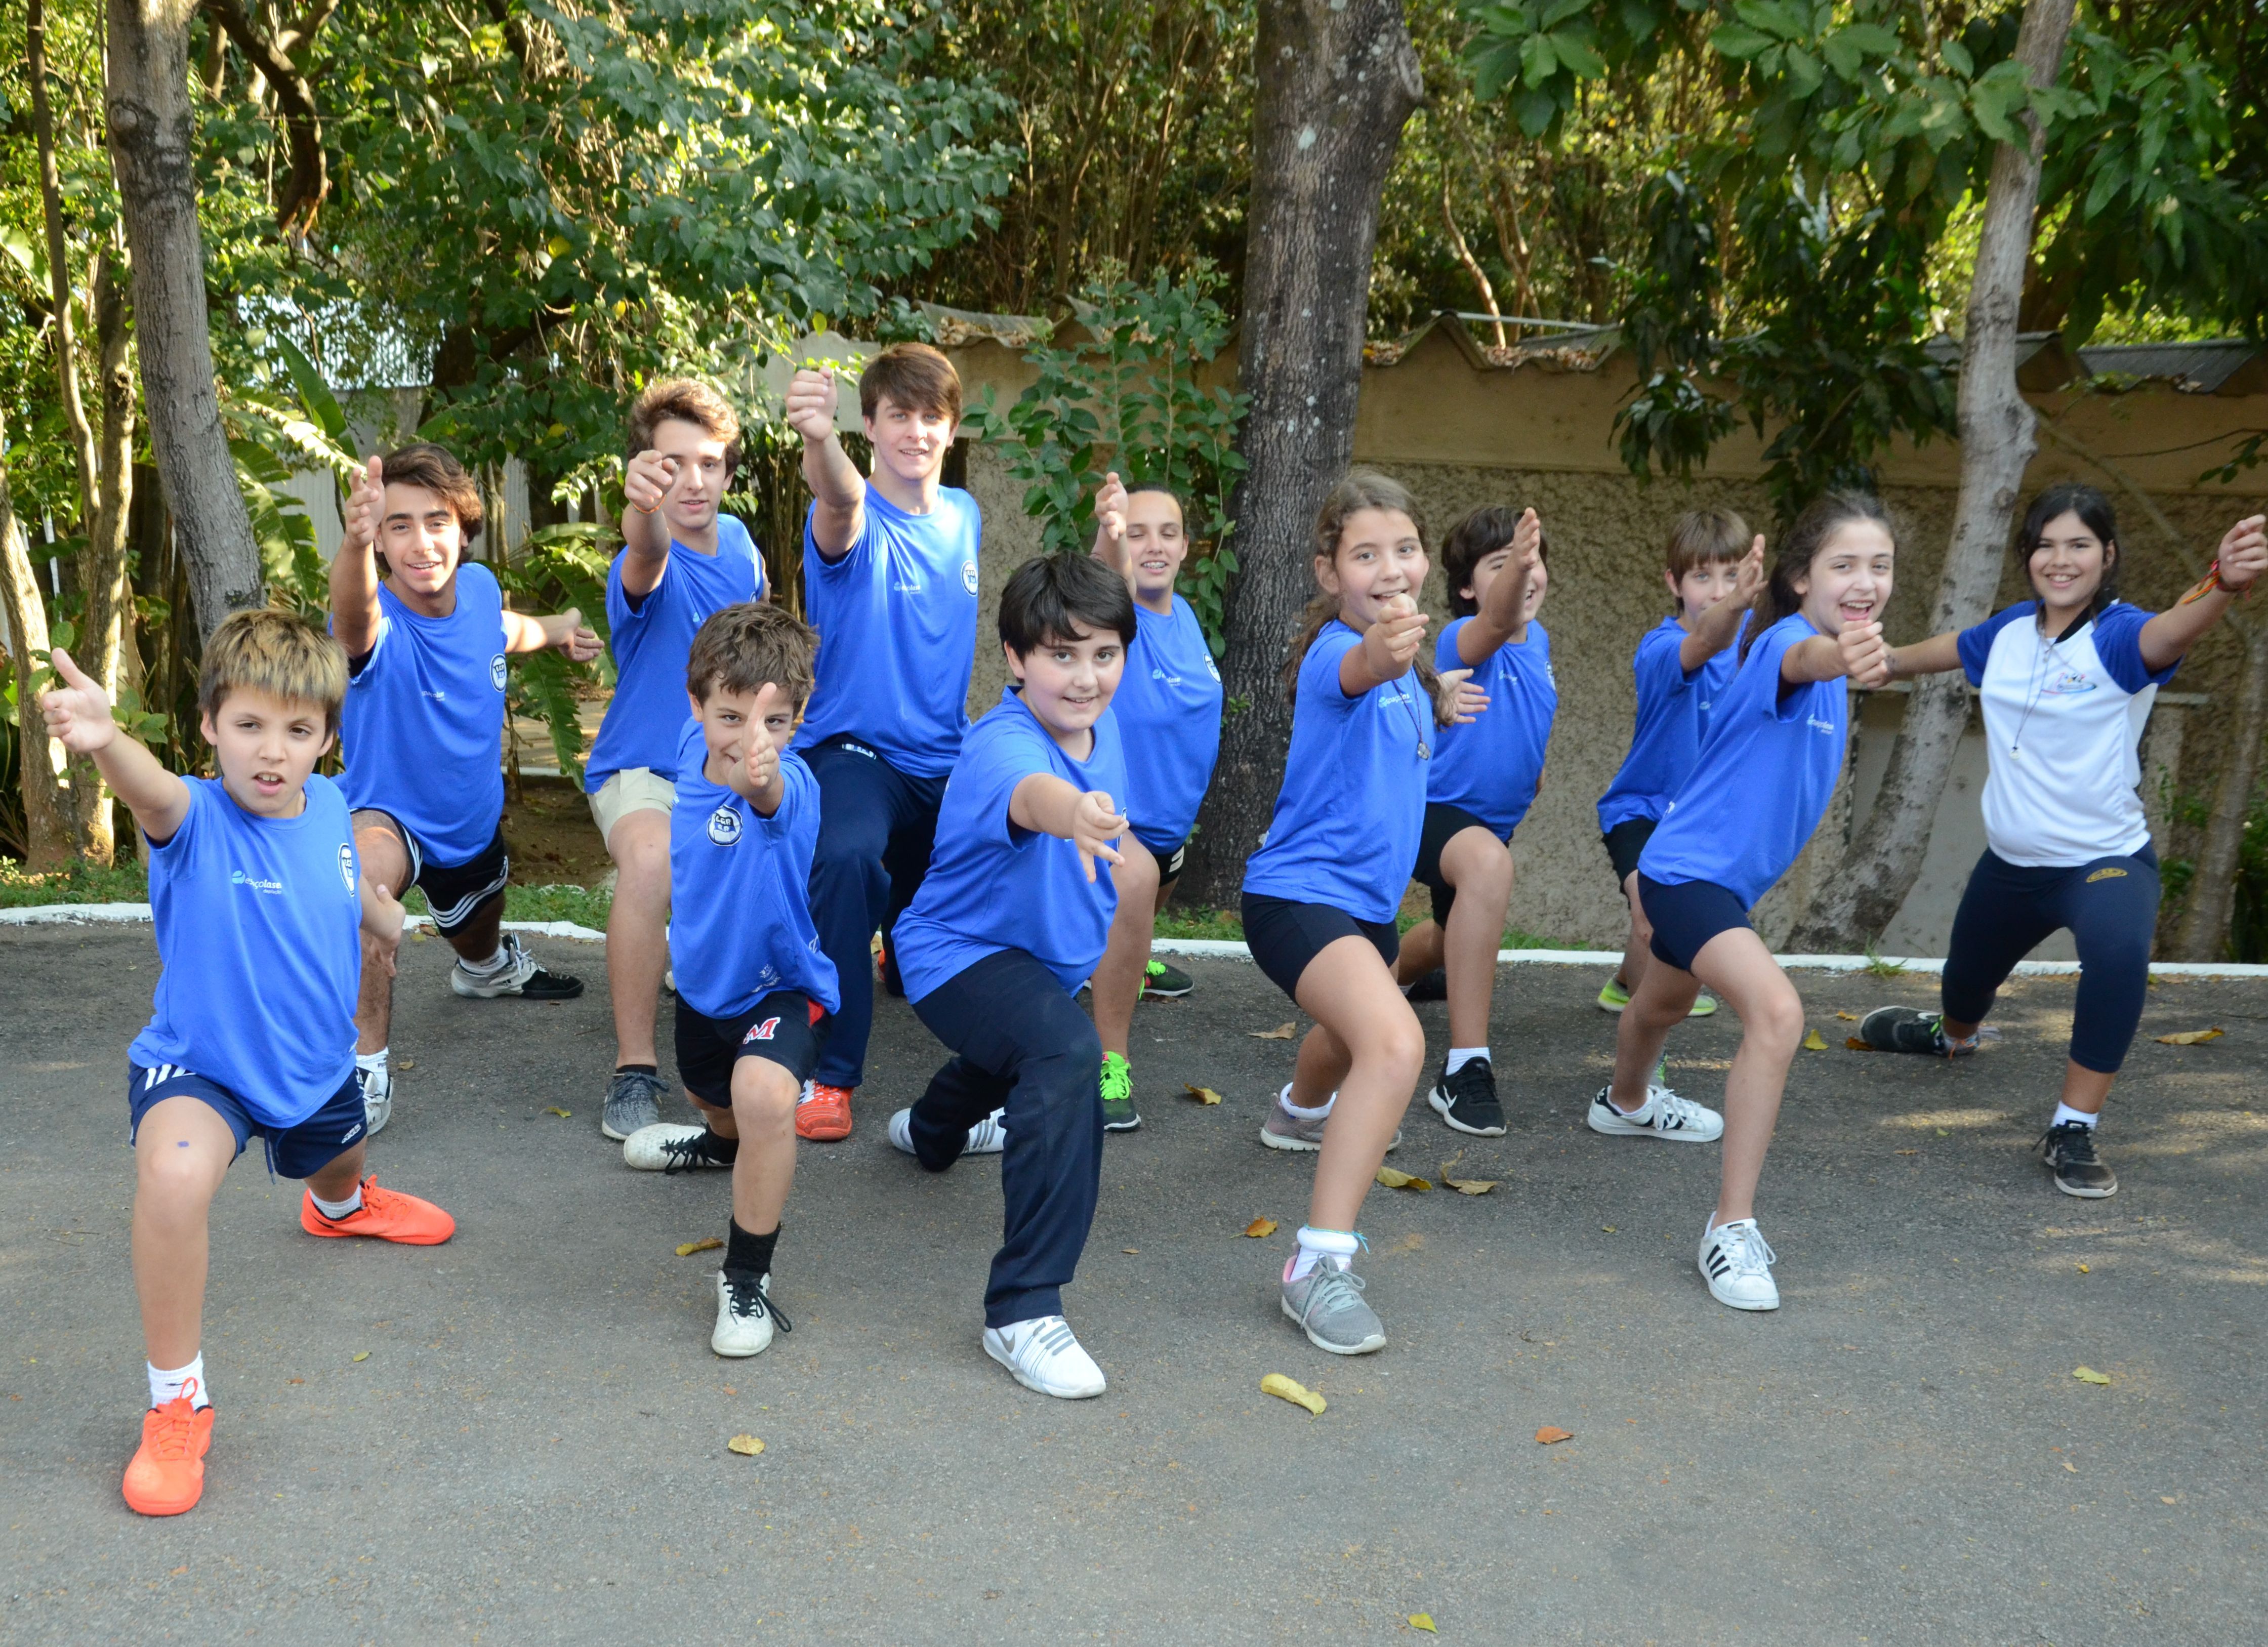 Na imagem, aparecem crianças vestidas com uniforme azul fazendo um movimento com braço, típico da esgrima.